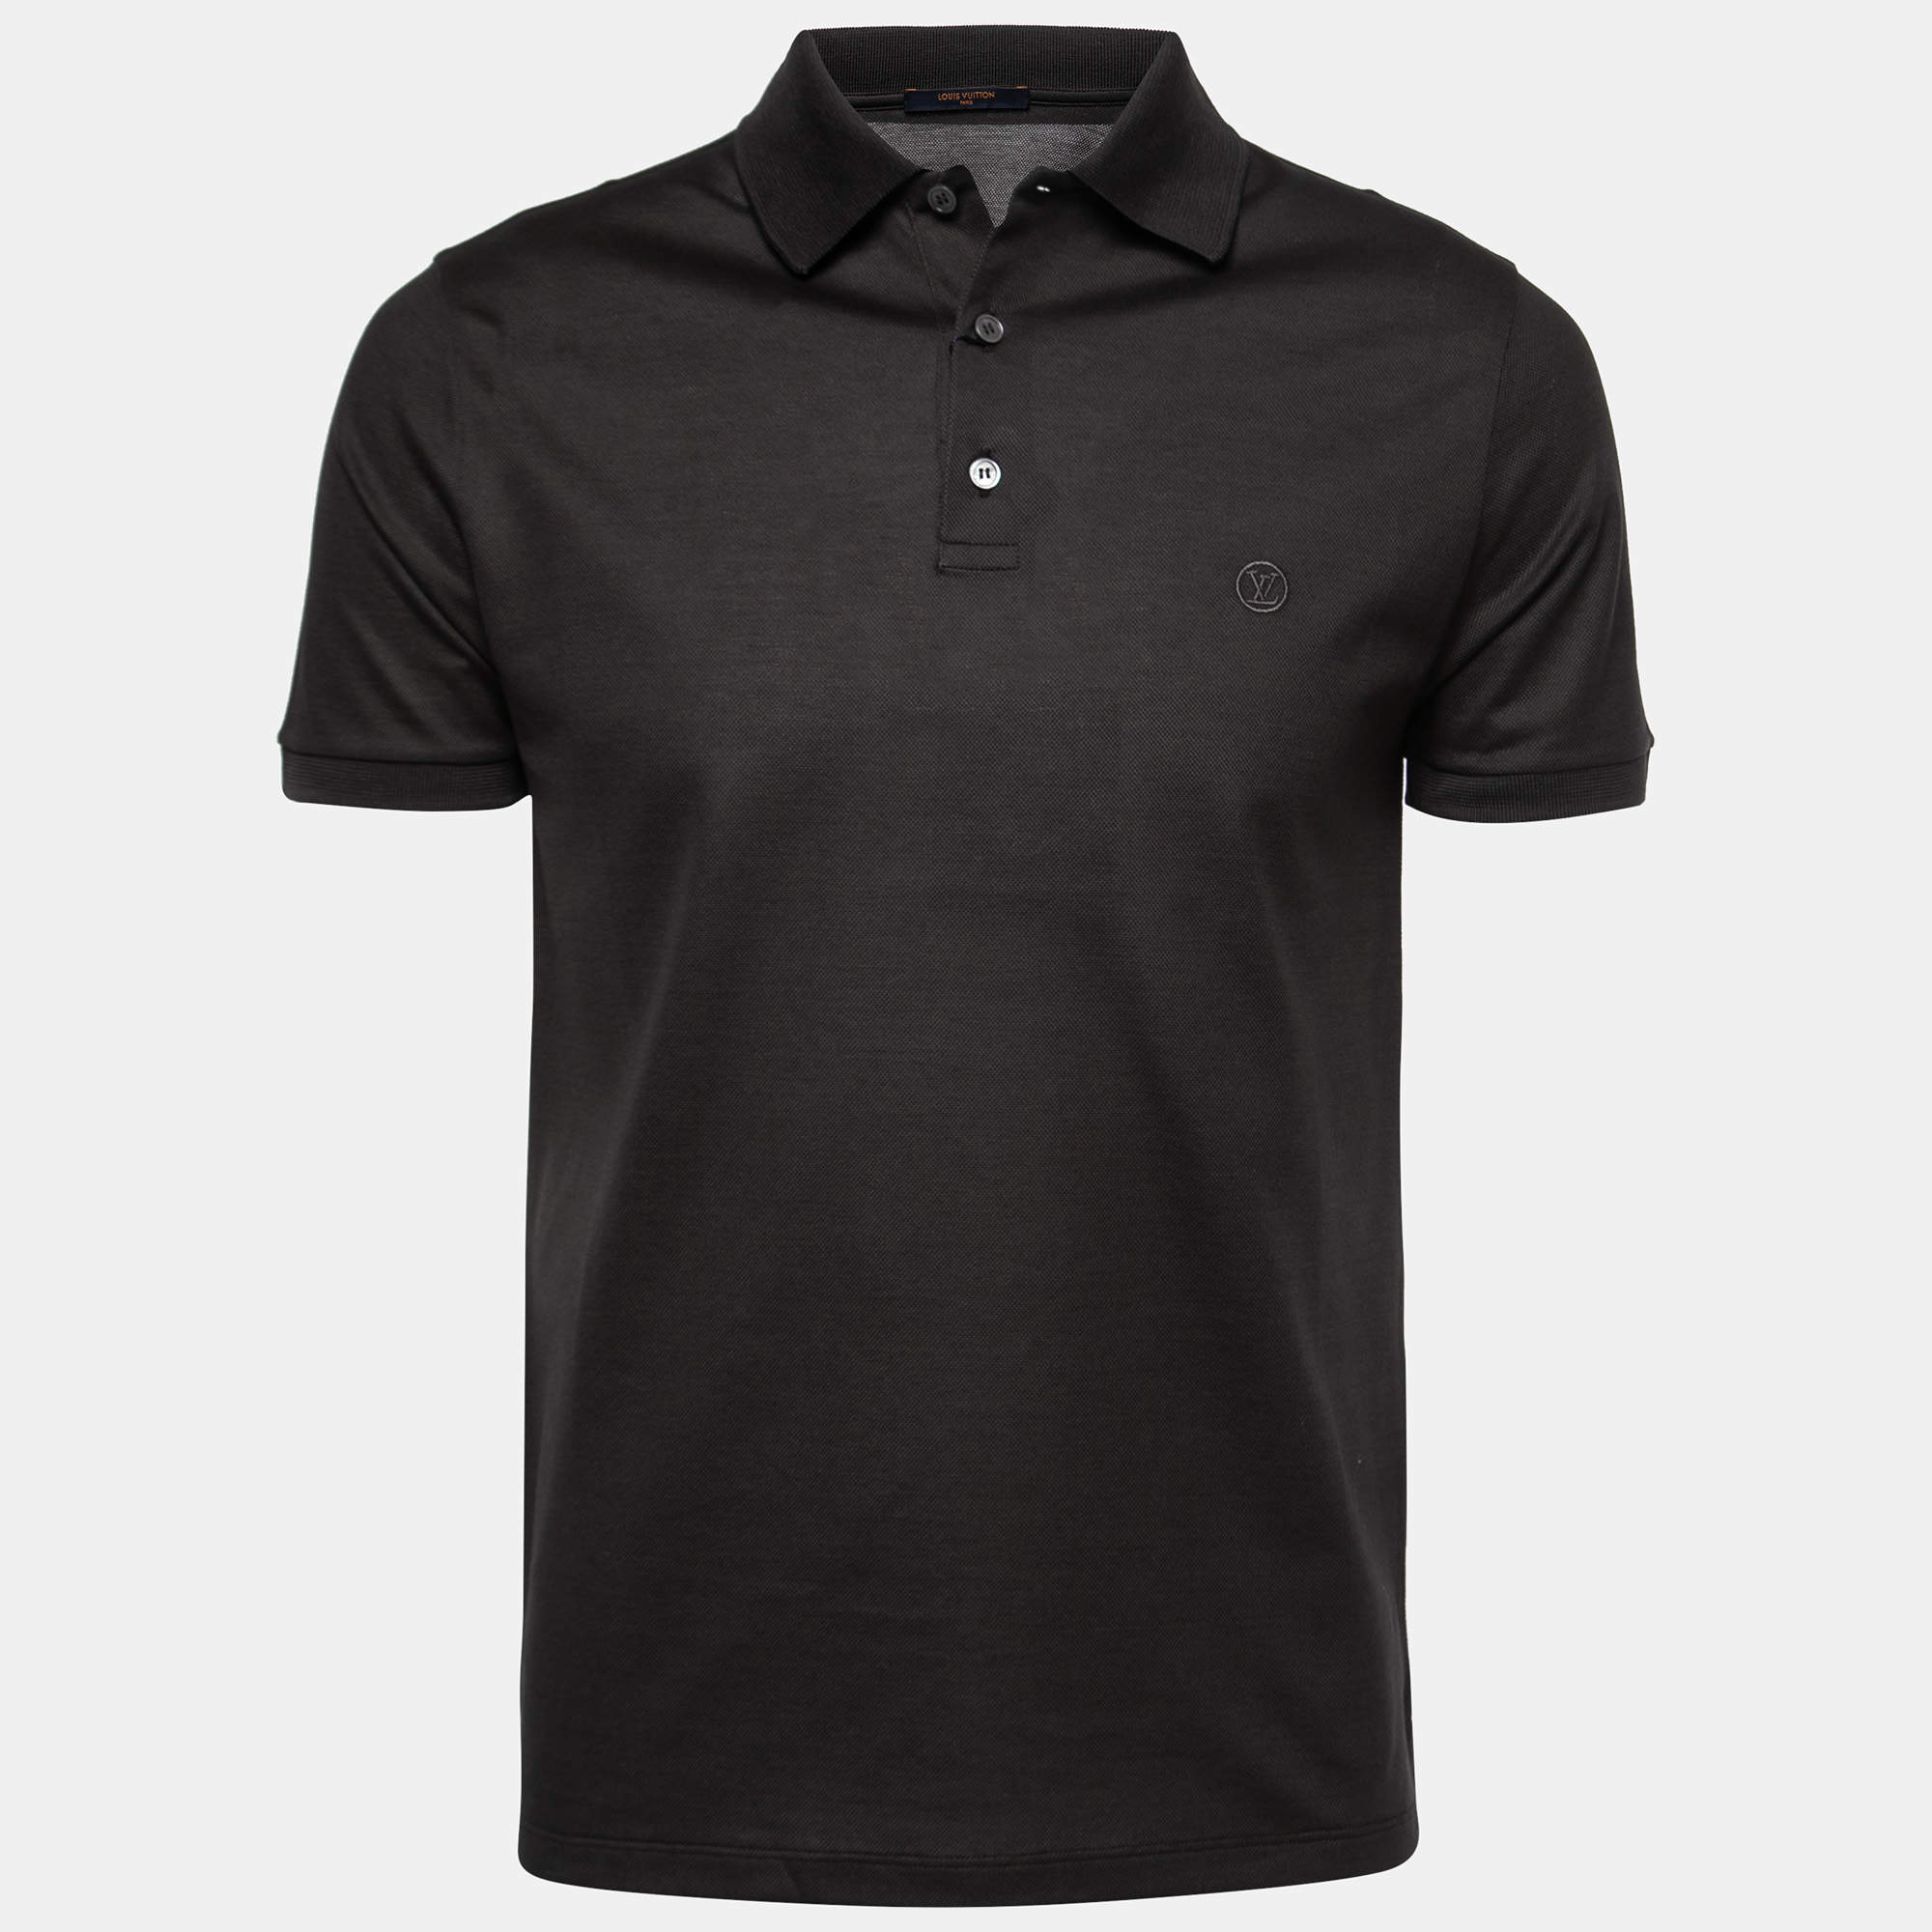 LV Black Polo Shirt